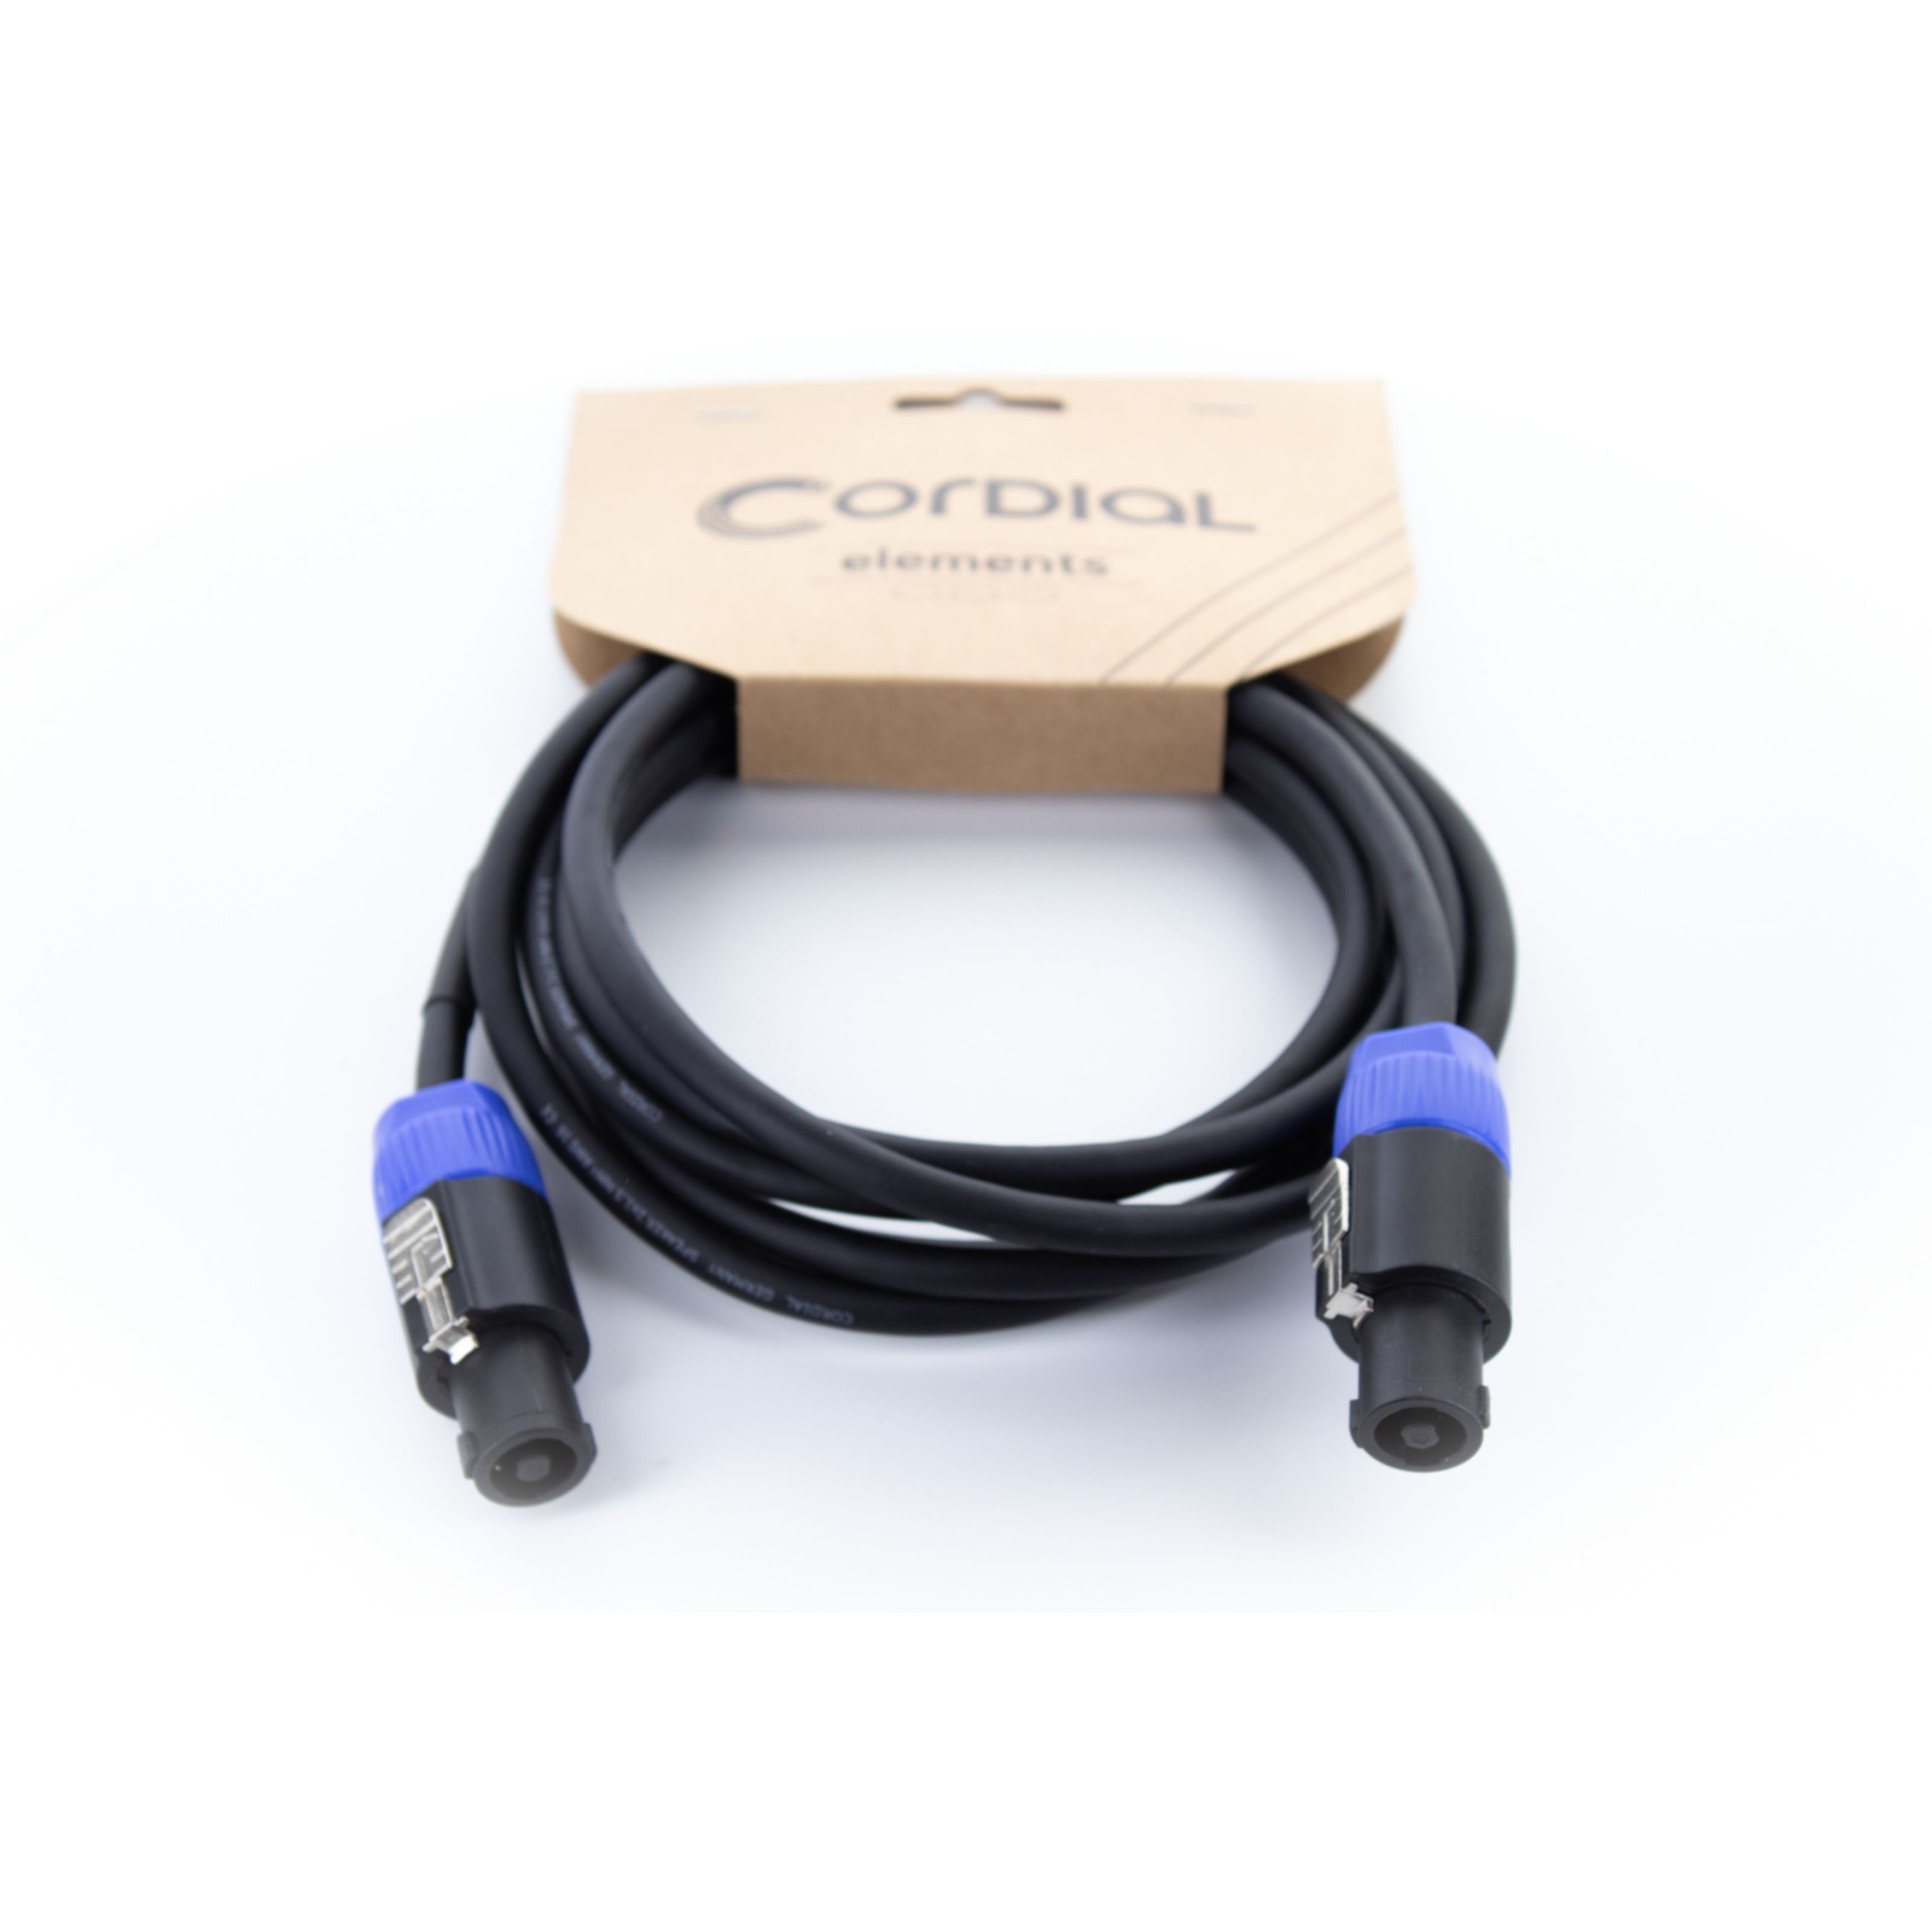 Cordial Audio-Kabel, EL 1.5 LL 215 Lautsprecherkabel 1,5 m - Lautsprecherkabel